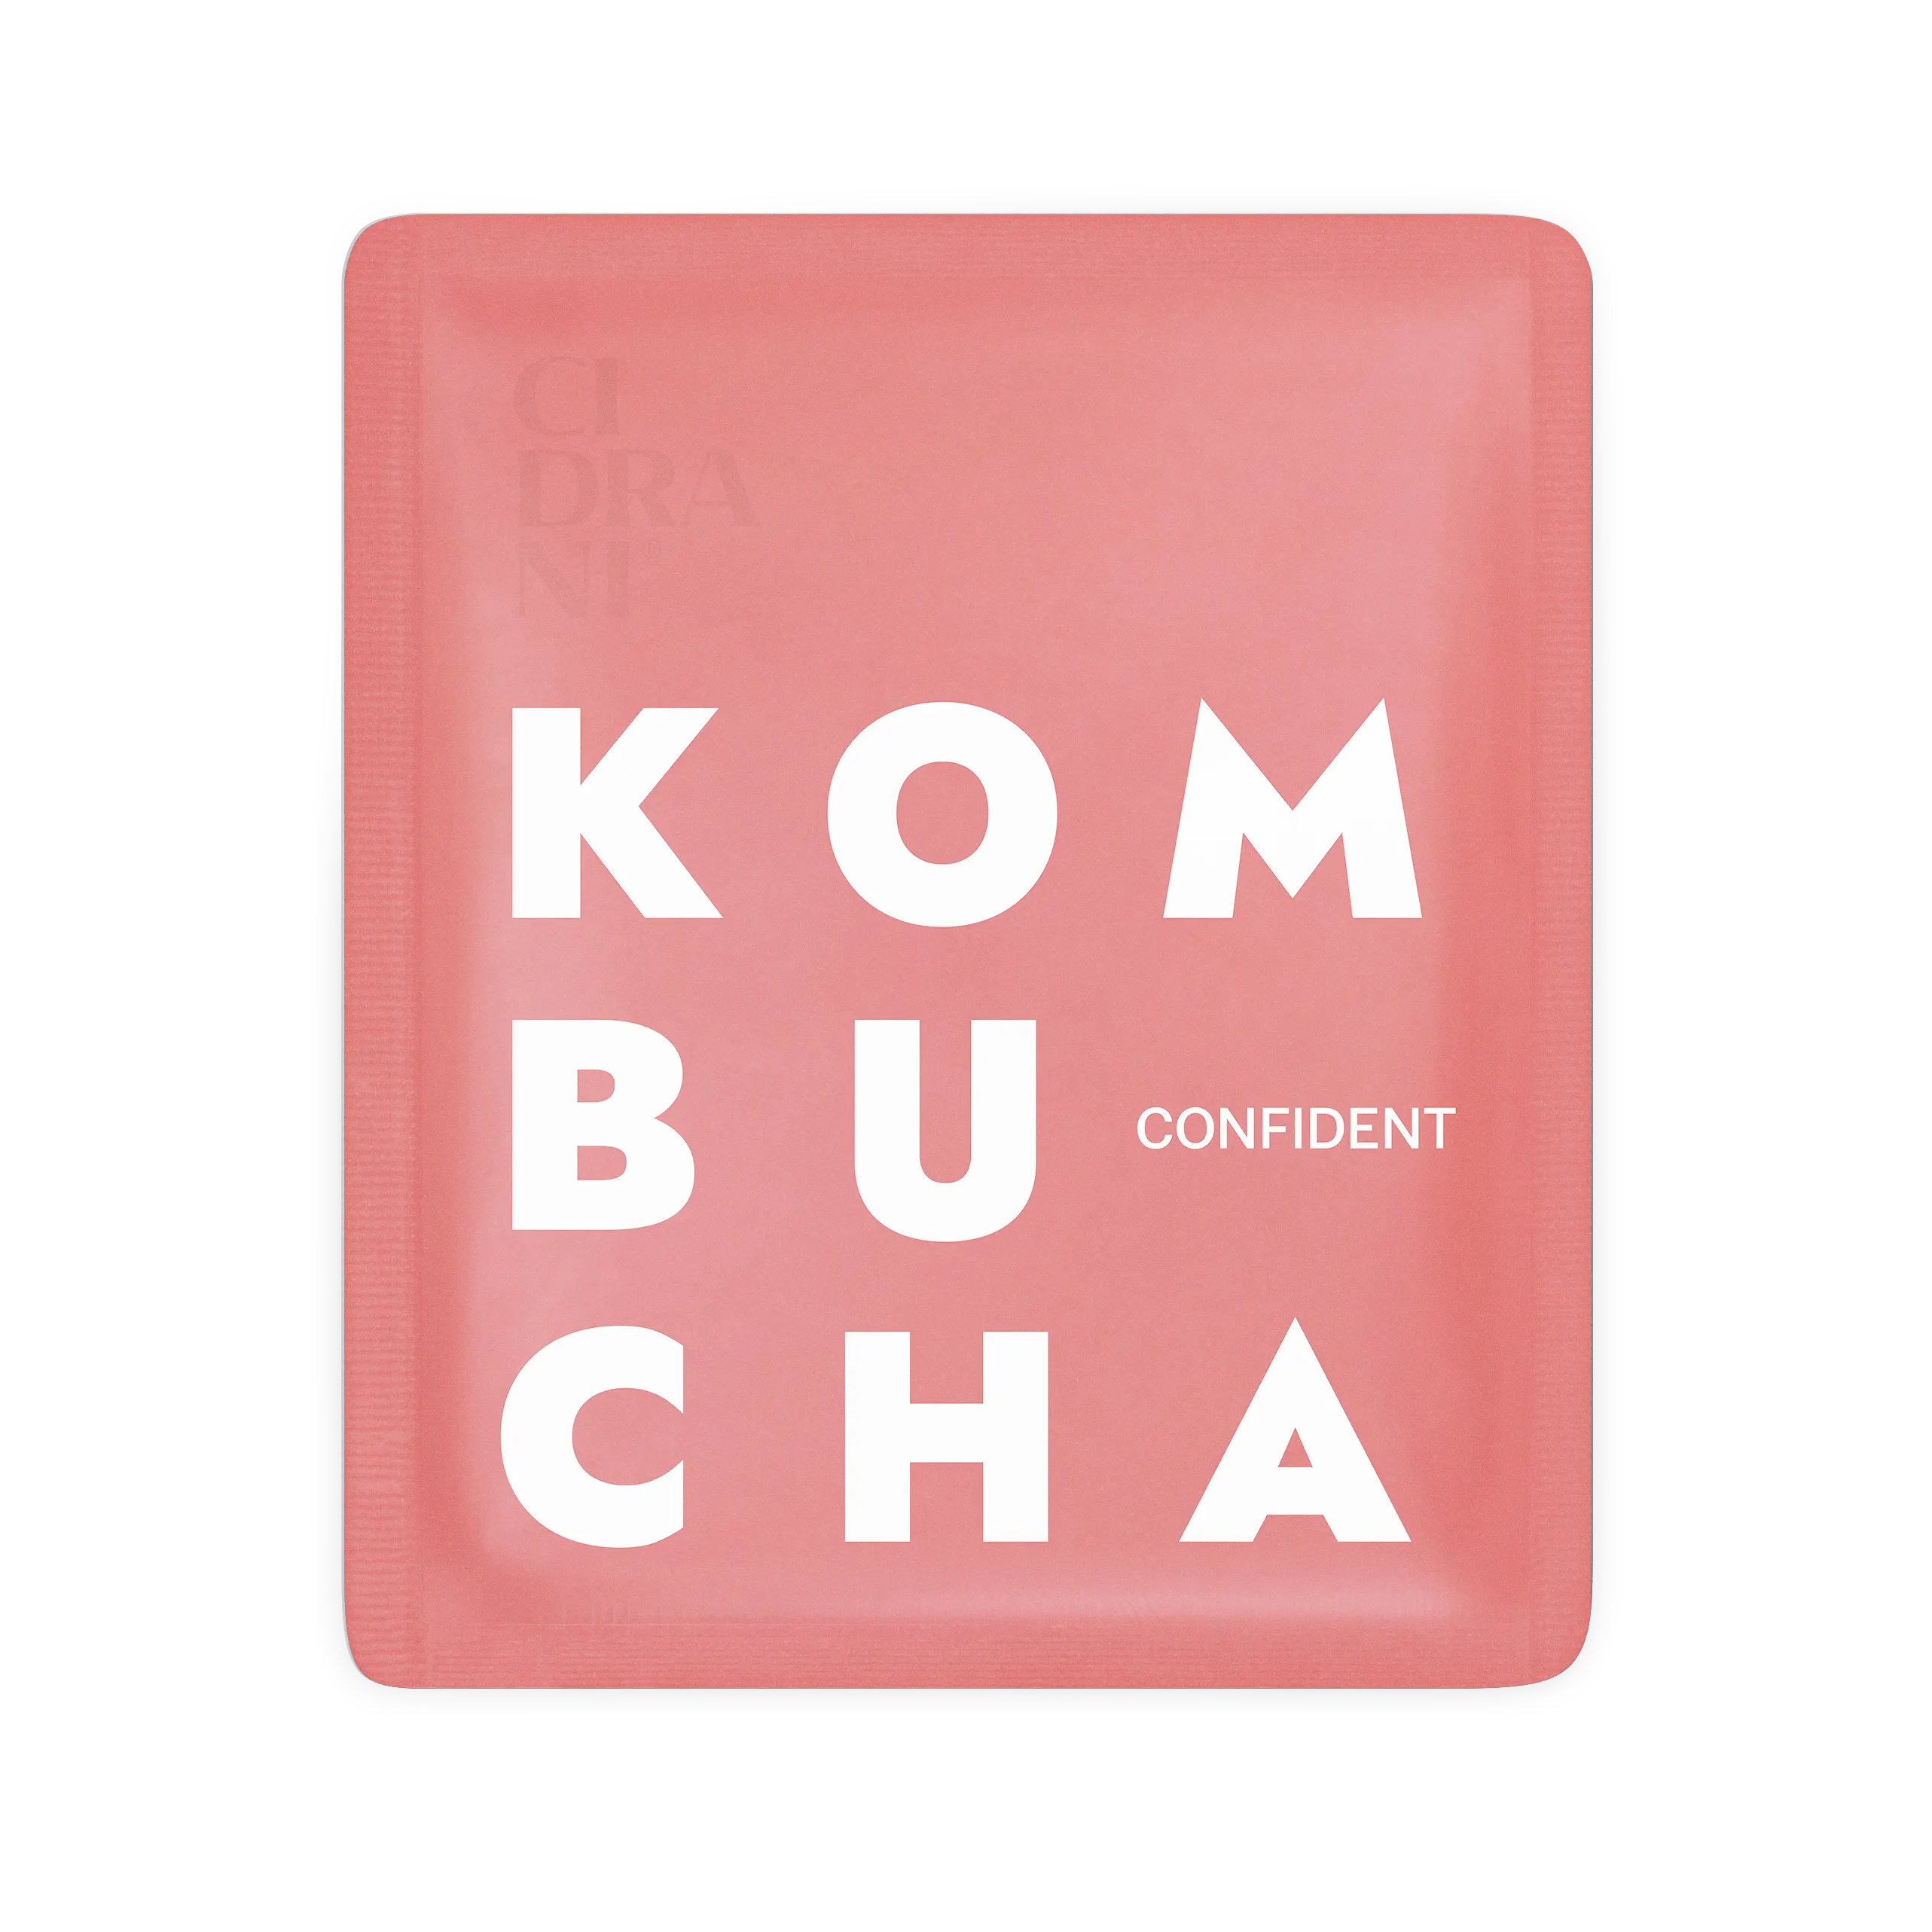 Micro-bautura fermentata, Kombucha Confident, bio, 17ml [1]